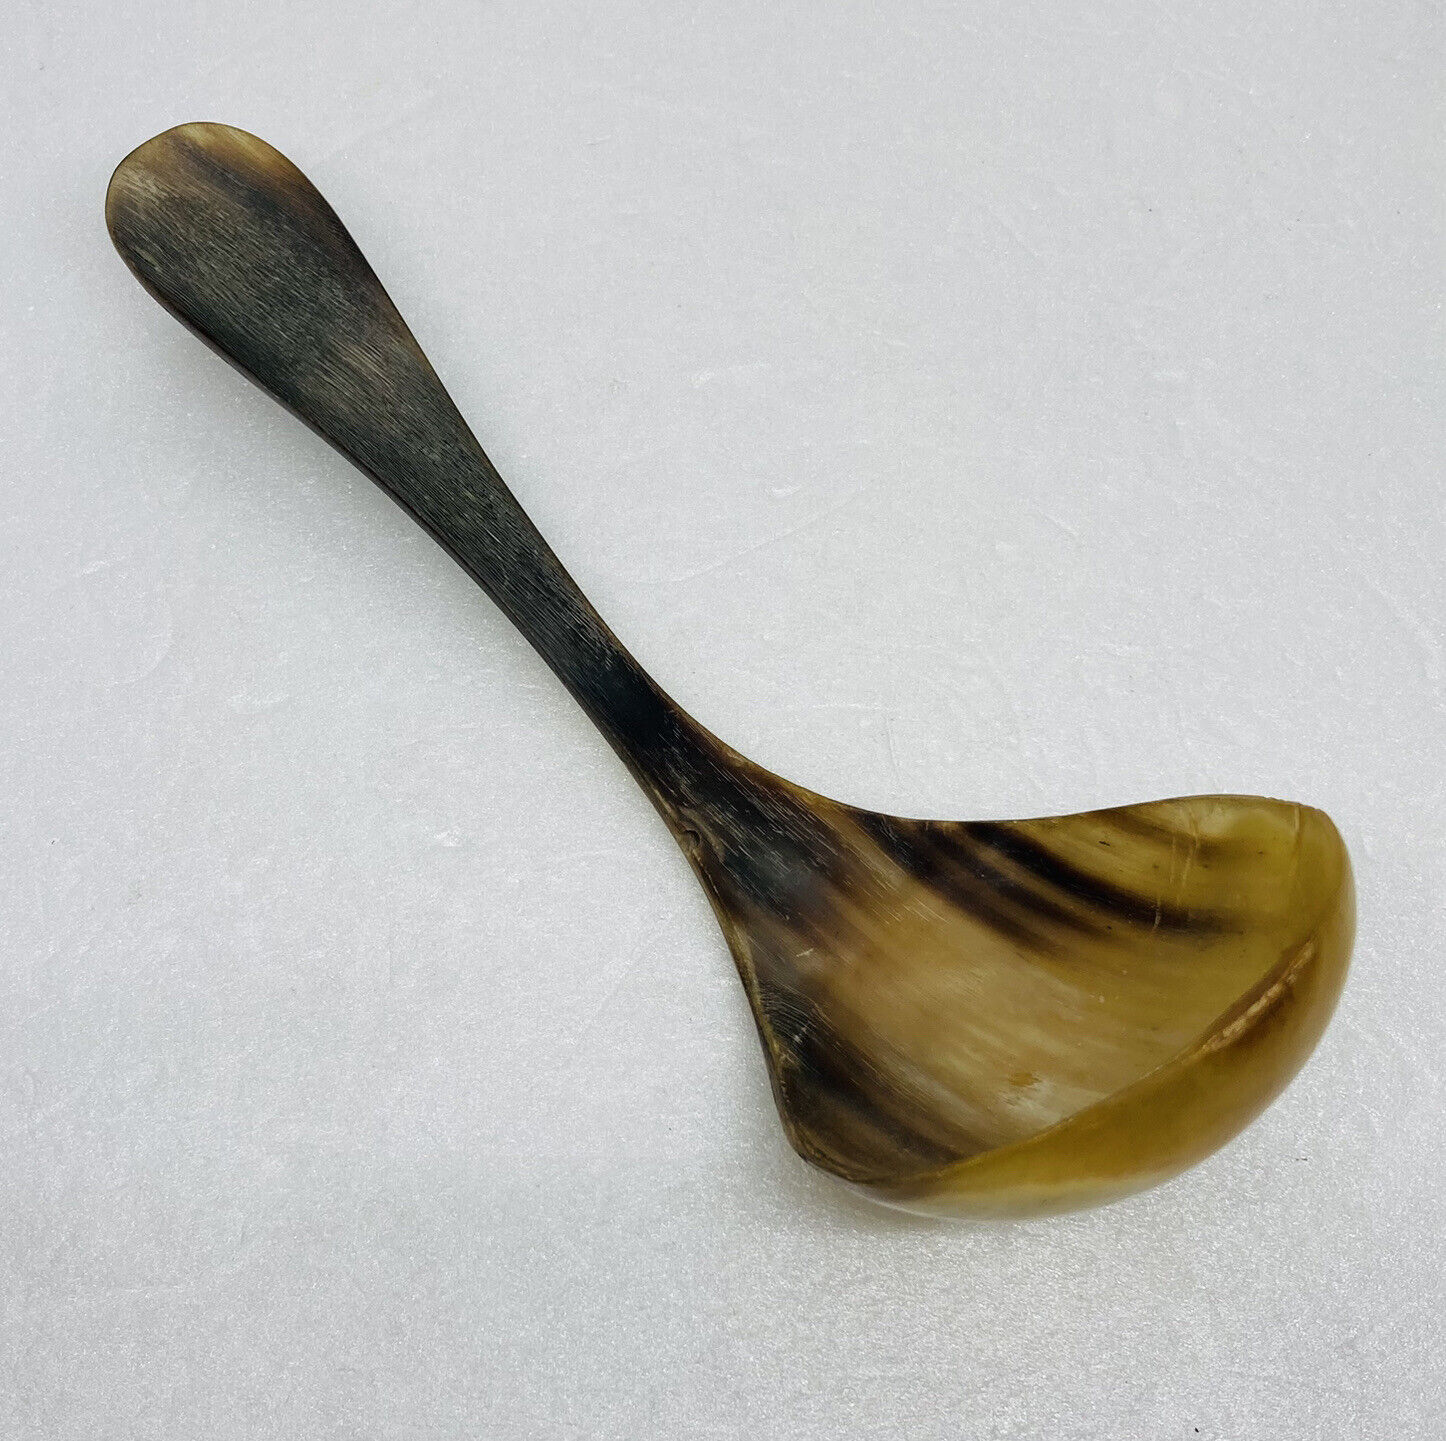 Vintage 1970s Handmade Deer Horn Ladle Spoon 6.5” Unique Round Utensil 30